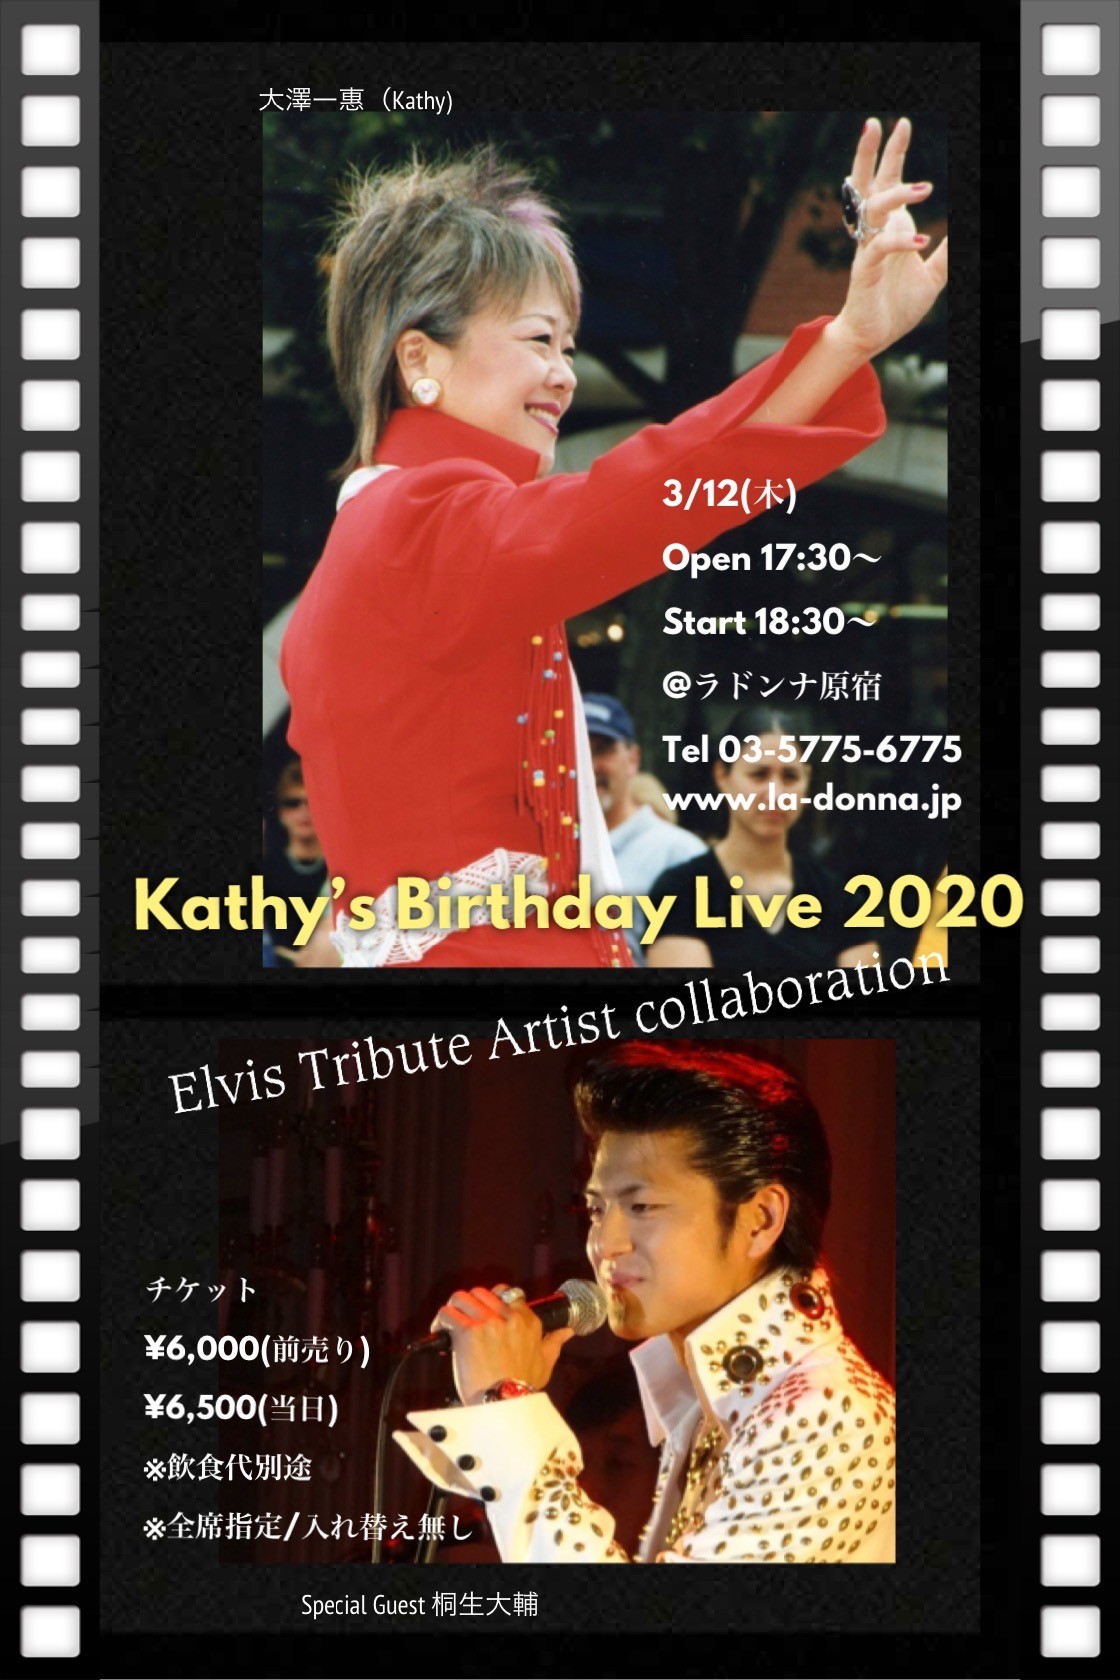 大澤一惠 Kathy’s Birthday Live【本公演は7/28日(火)へ延期となりました。】